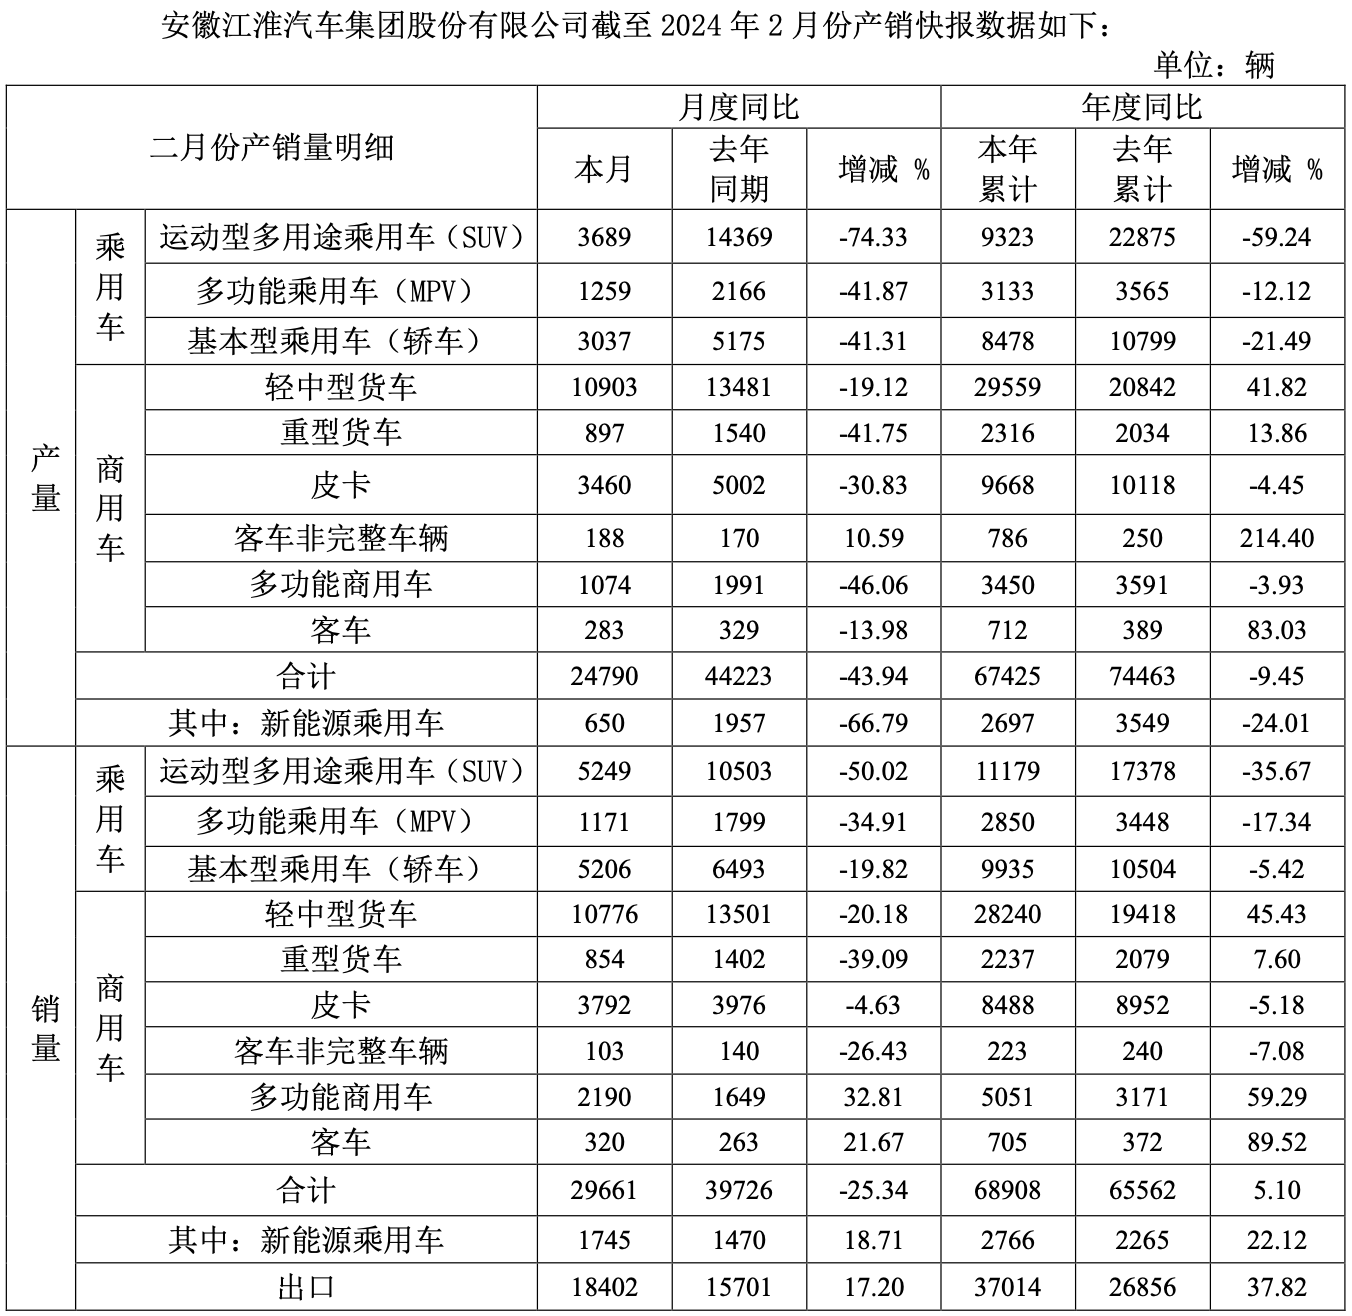 江淮汽车集团 2024 年 1-2 月销量 6.89 万辆，同比增长 5.1%